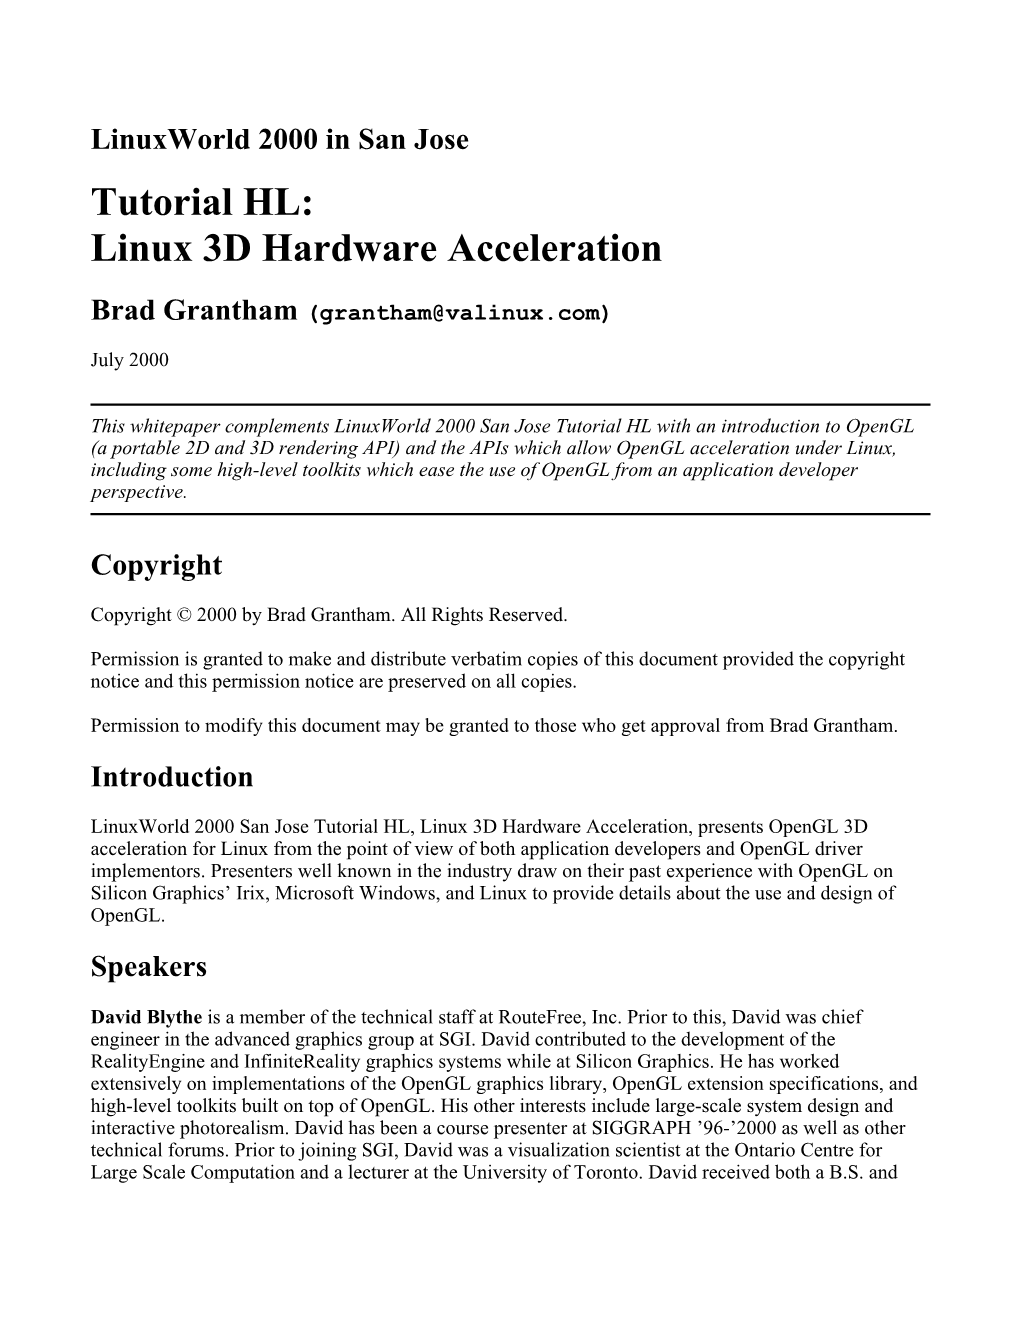 Tutorial HL: Linux 3D Hardware Acceleration